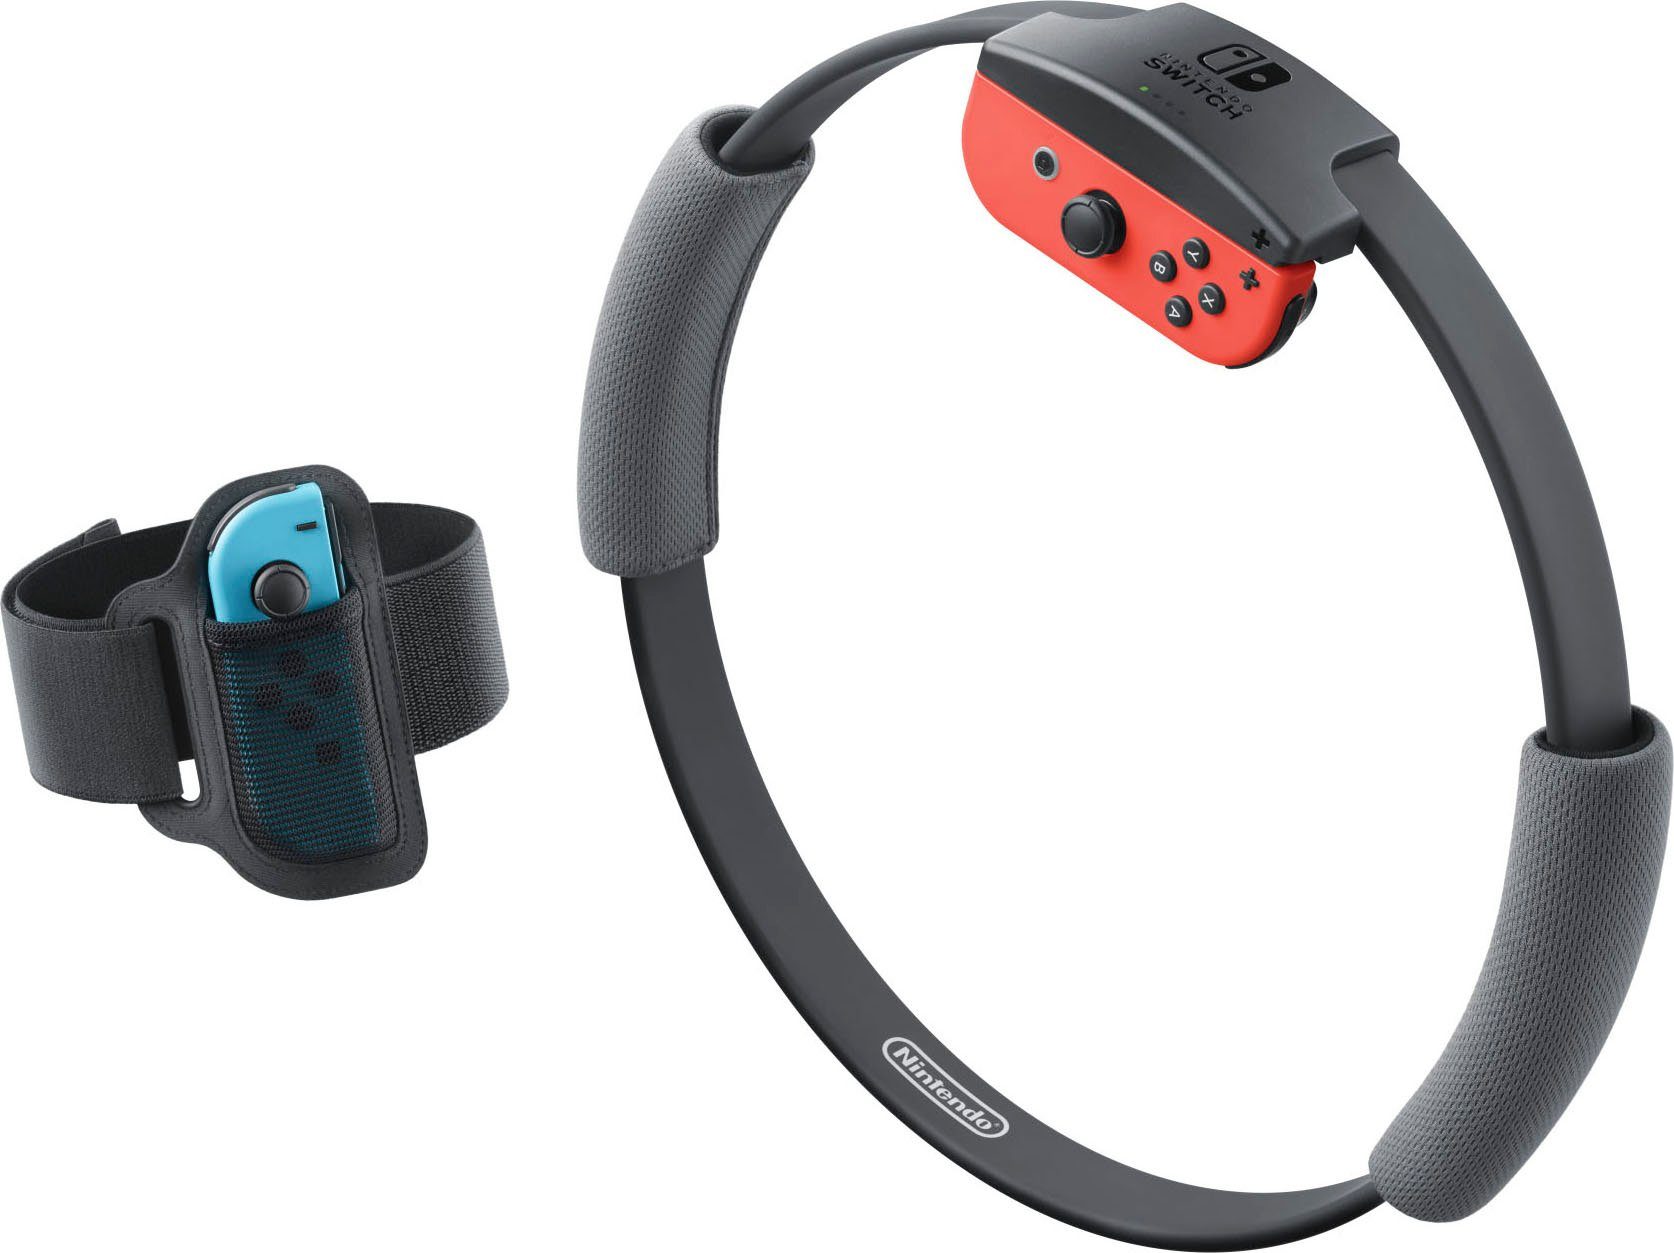 Nintendo Switch, Ring Fit Adventure Set, Jederzeit und überall spielen auf  dem 6,2 Zoll-(15,75 cm)-Multi-Touch Display online kaufen | OTTO